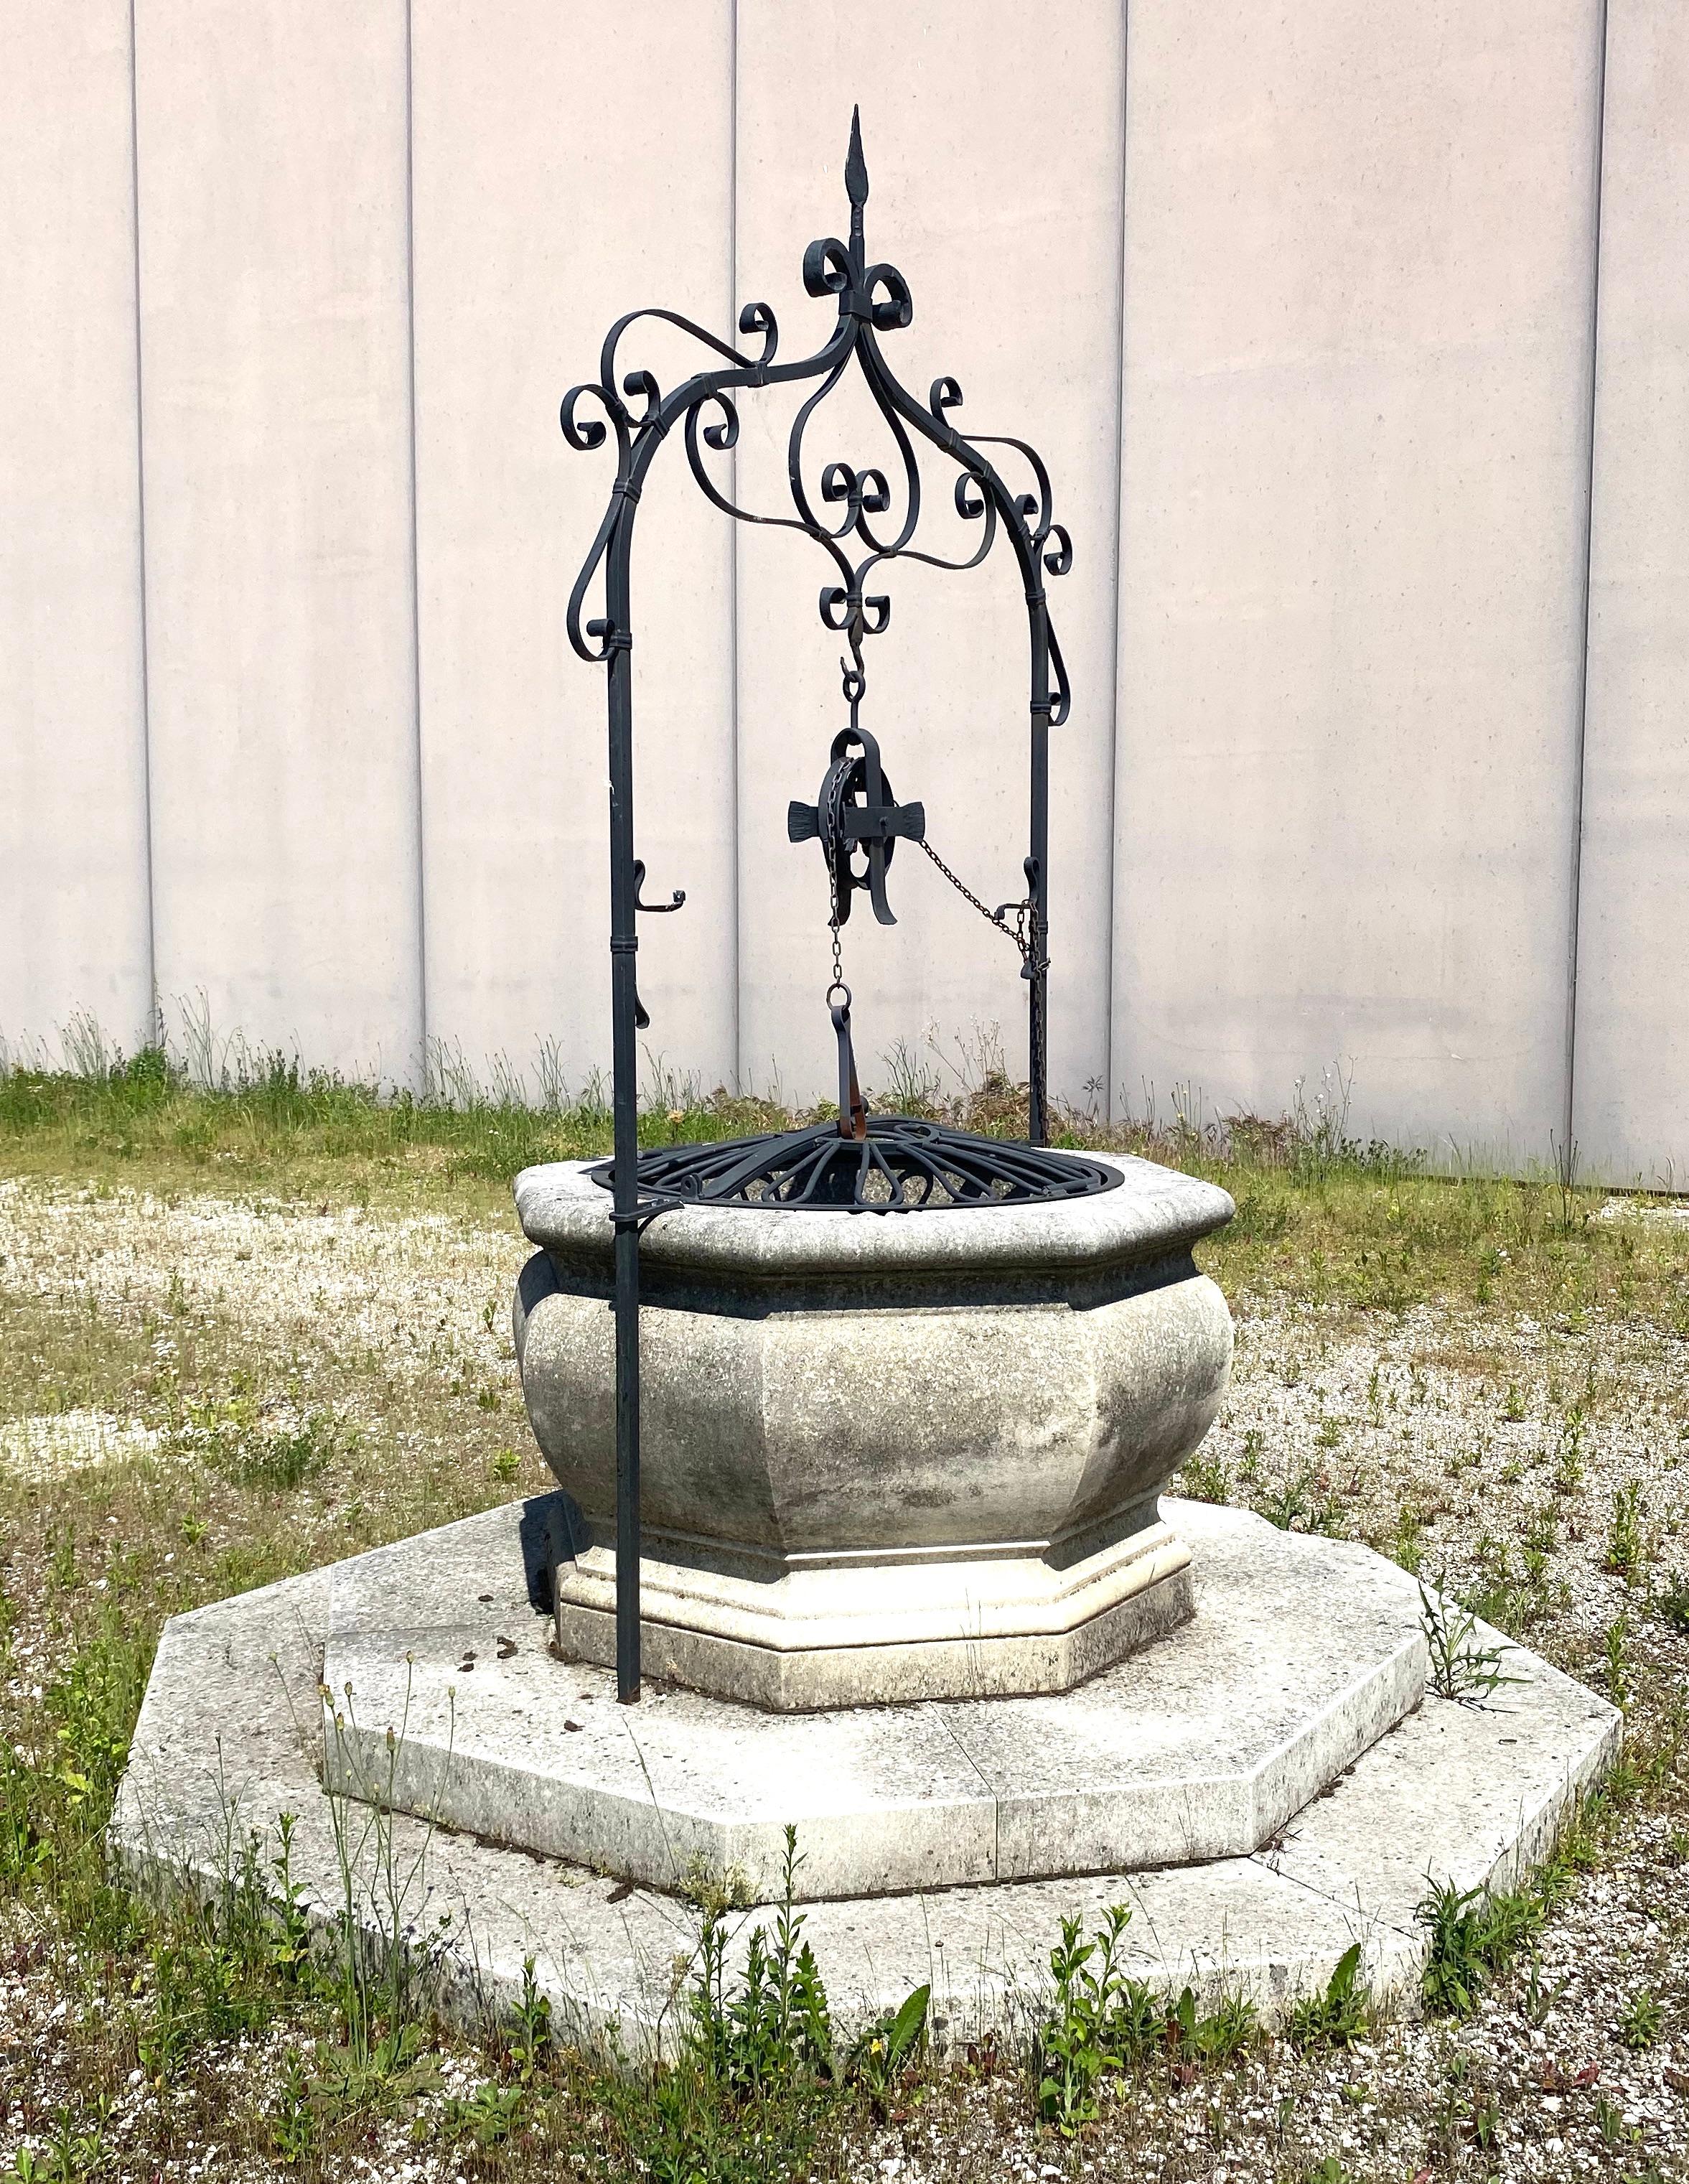 Une belle tête de puits à souhaits italienne en pierre calcaire sculptée et en fer forgé, provenant de la région de Vénétie.
Une belle décoration pour votre jardin.
Il peut également être utilisé comme jardinière. La base octogonale a un diamètre